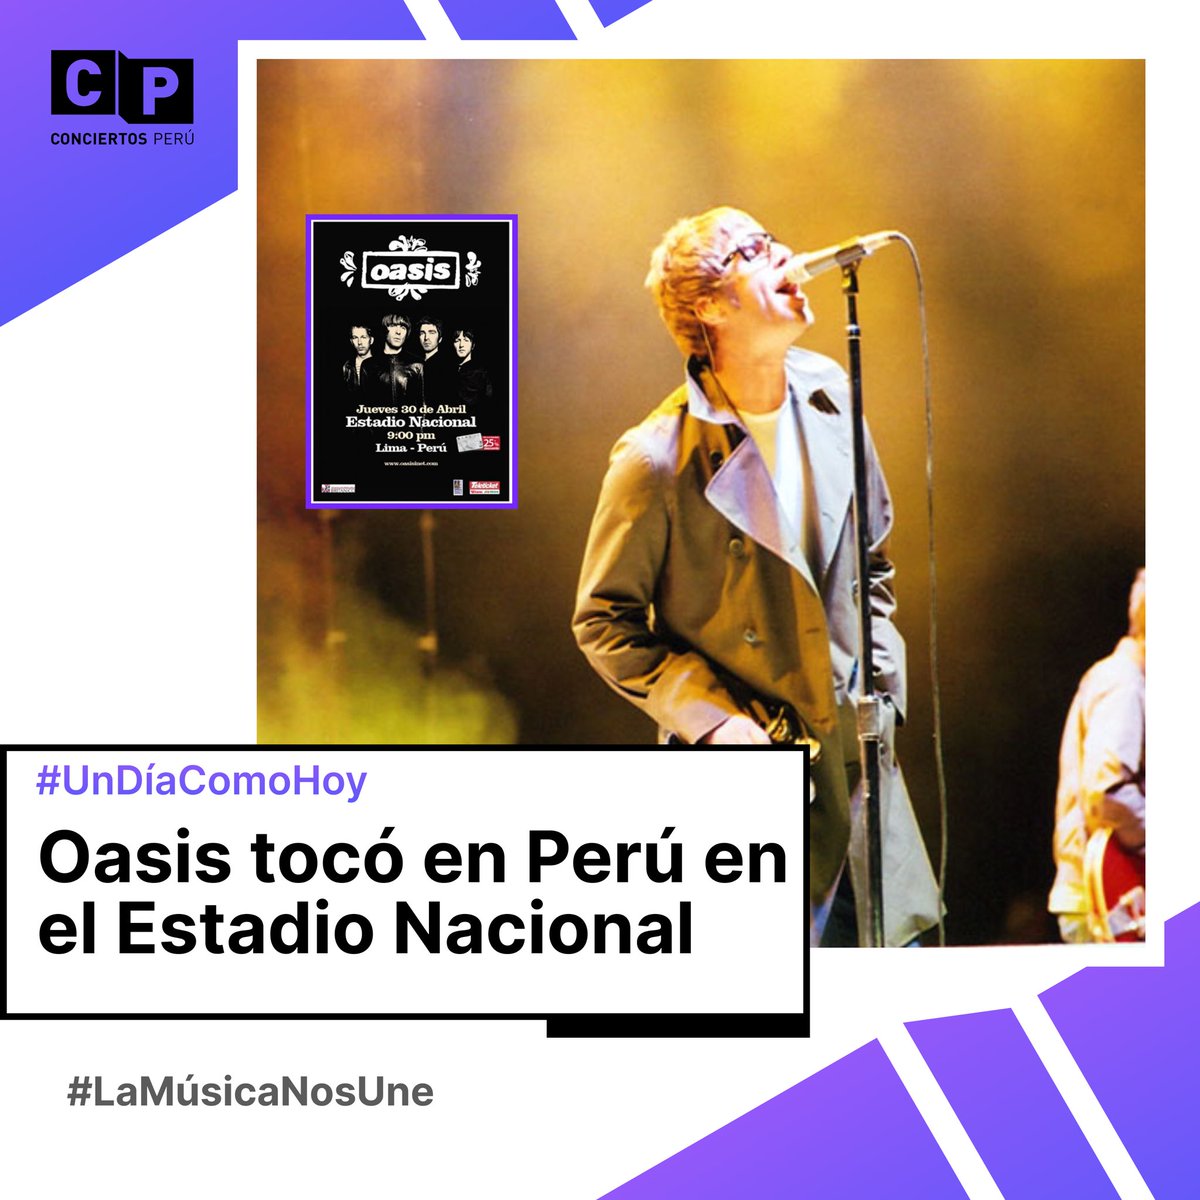 #UnDíaComoHoy hace 15 años @oasis tocó en Perú en el Estadio Nacional (2009). 🍾 🎶 

¿Estuviste ahí, qué recuerdas? 👀 
#UnDíaComoHoy #ConciertosPerú #concierto #peru #Oasis